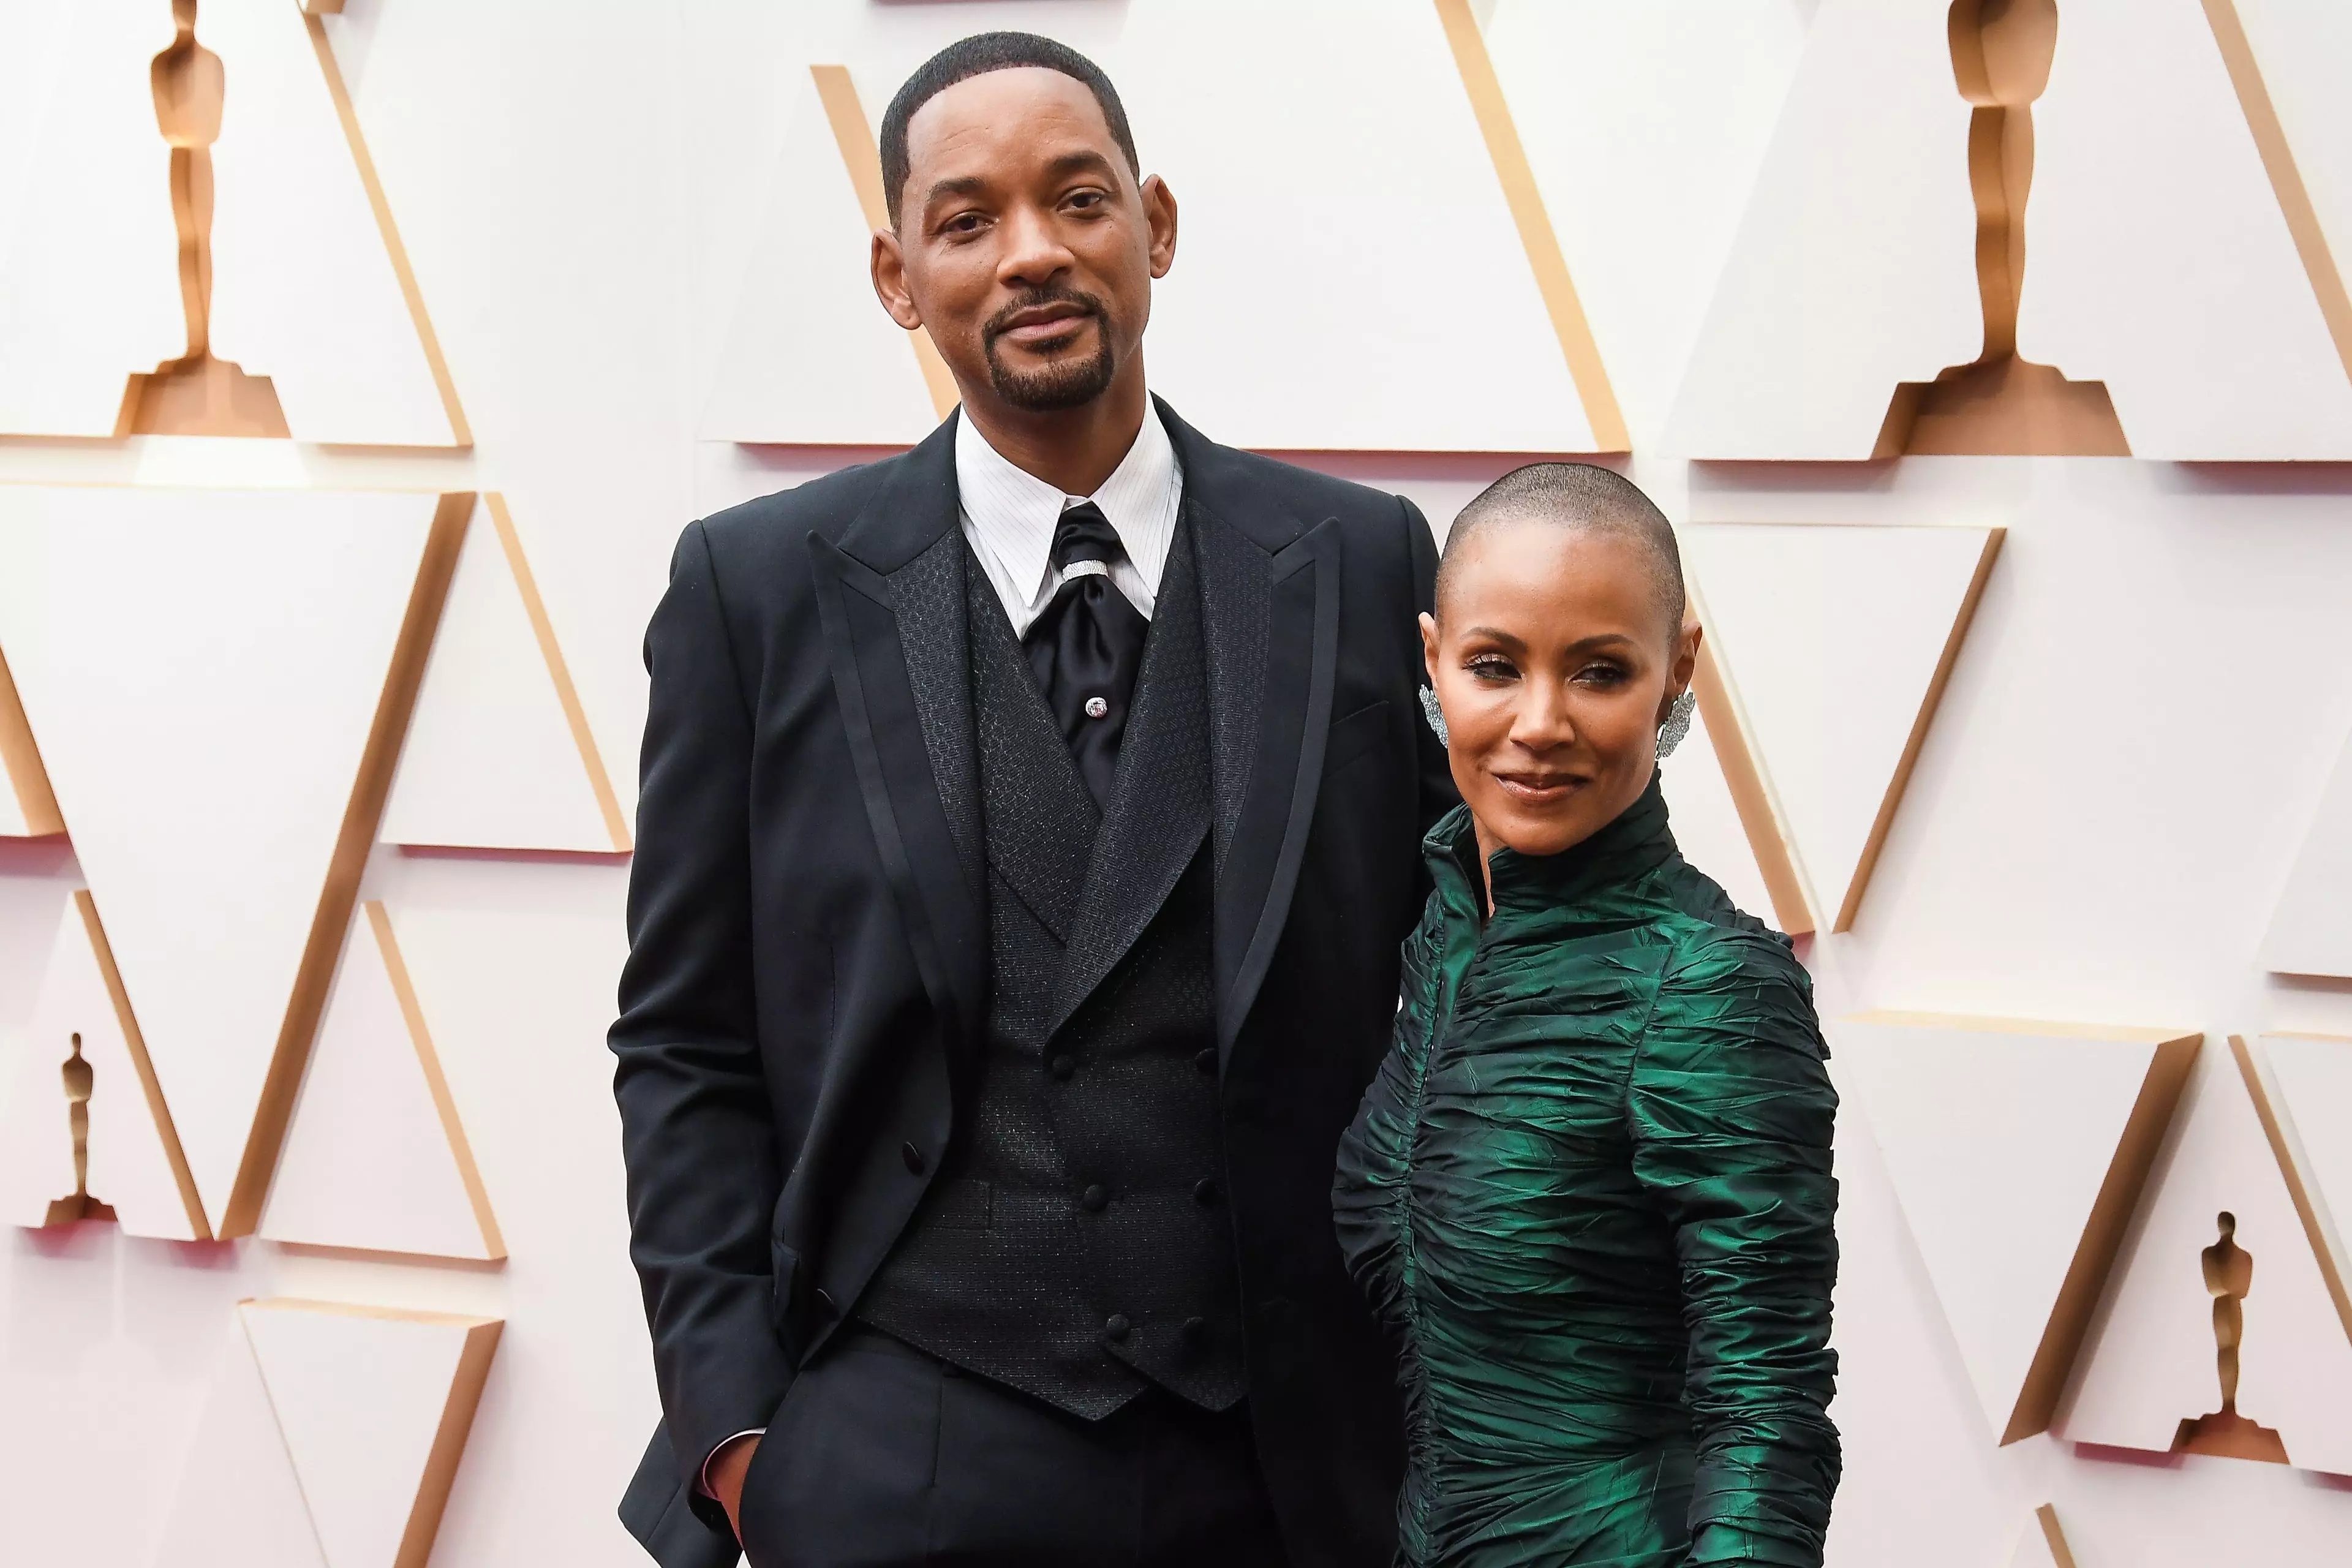 Will Smith and Jada Pinkett Smith at the Oscars. (